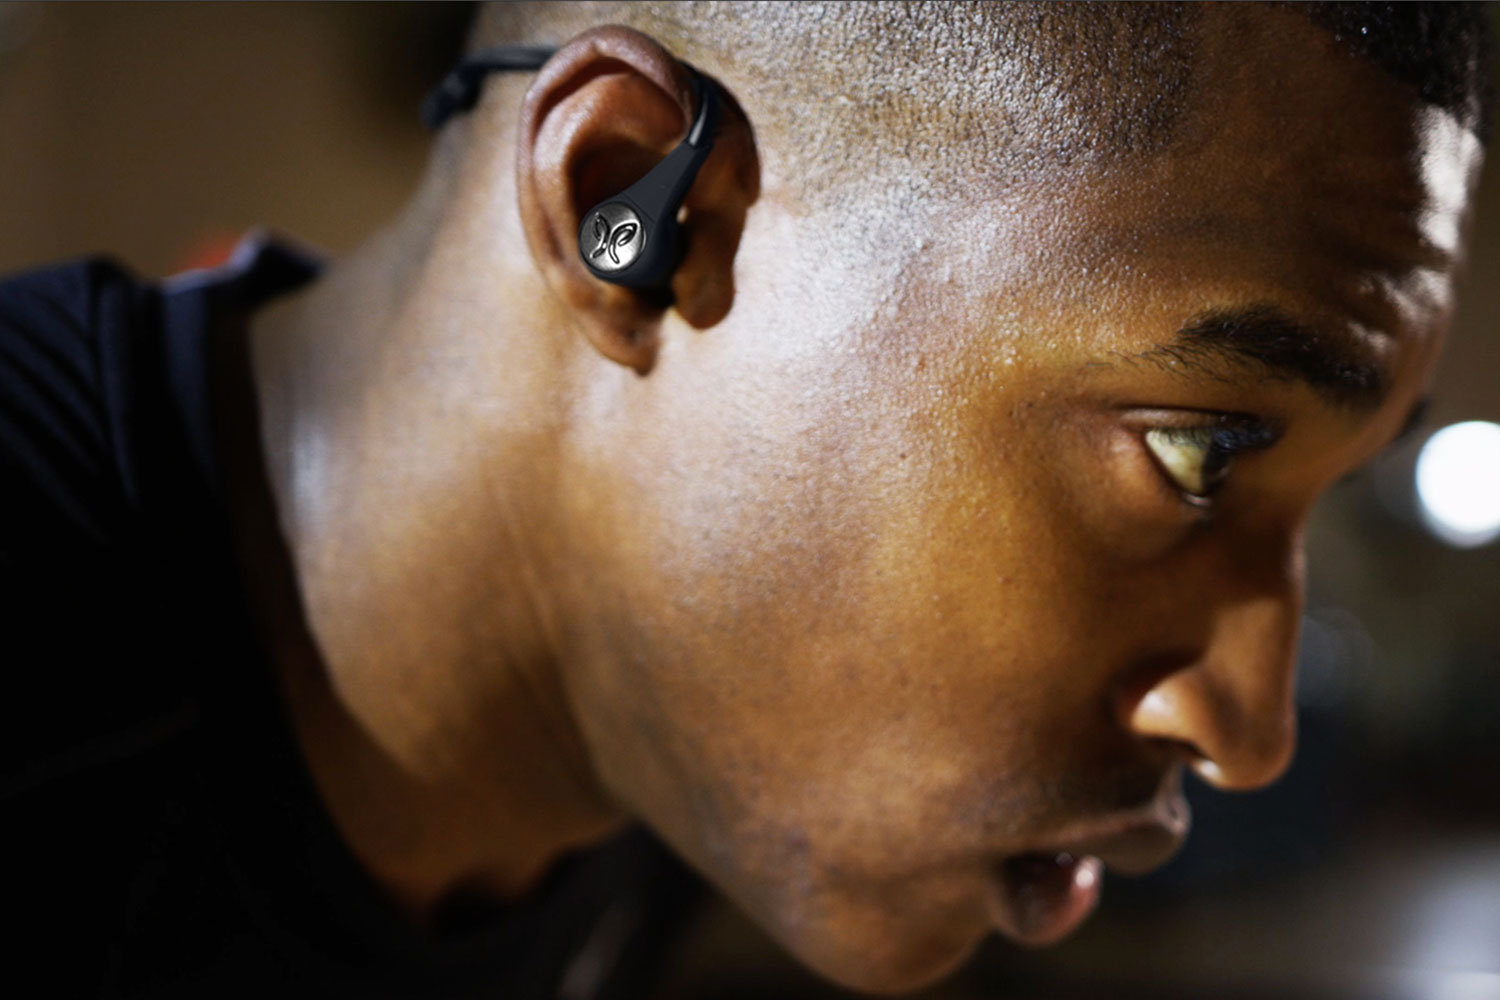 jaybird x3 wireless sport headphones announced 1